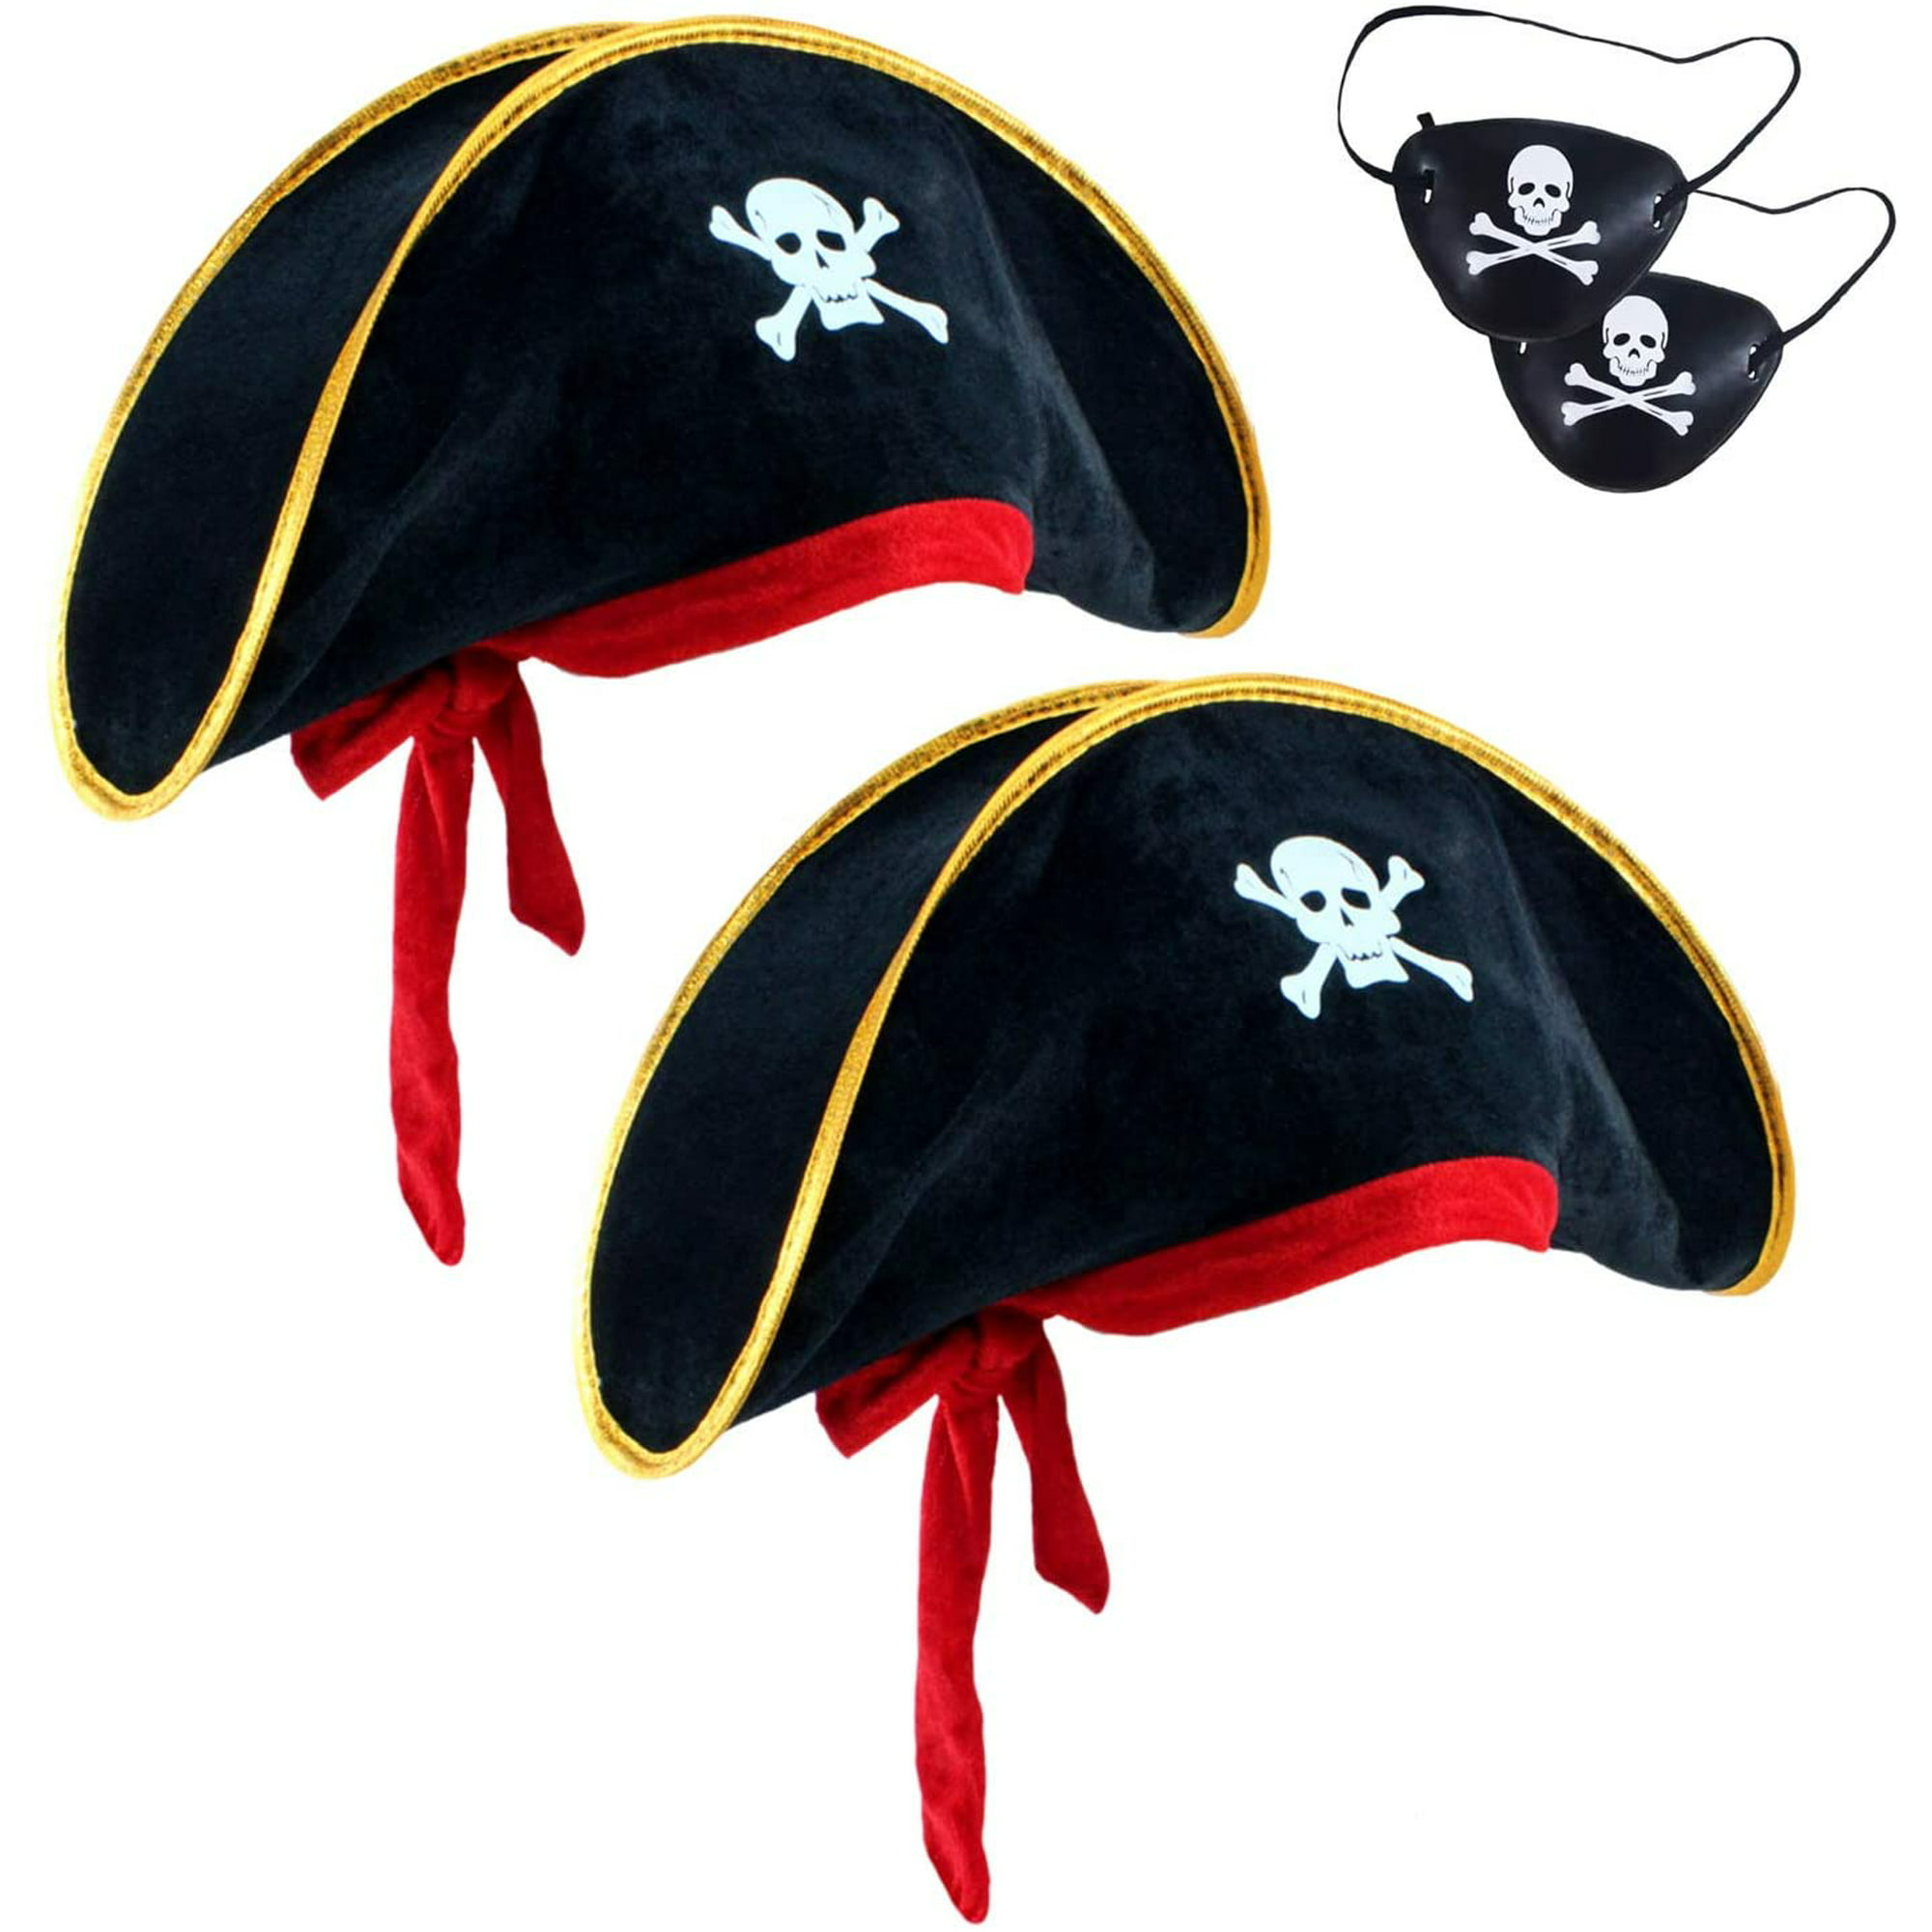  D-Fokes Paquete de 2 sombreros de pirata de fieltro para niños,  sombrero de fiesta pirata de tres esquinas, disfraz de capitán pirata con  estampado de calavera, fiesta, cumpleaños, accesorios de 